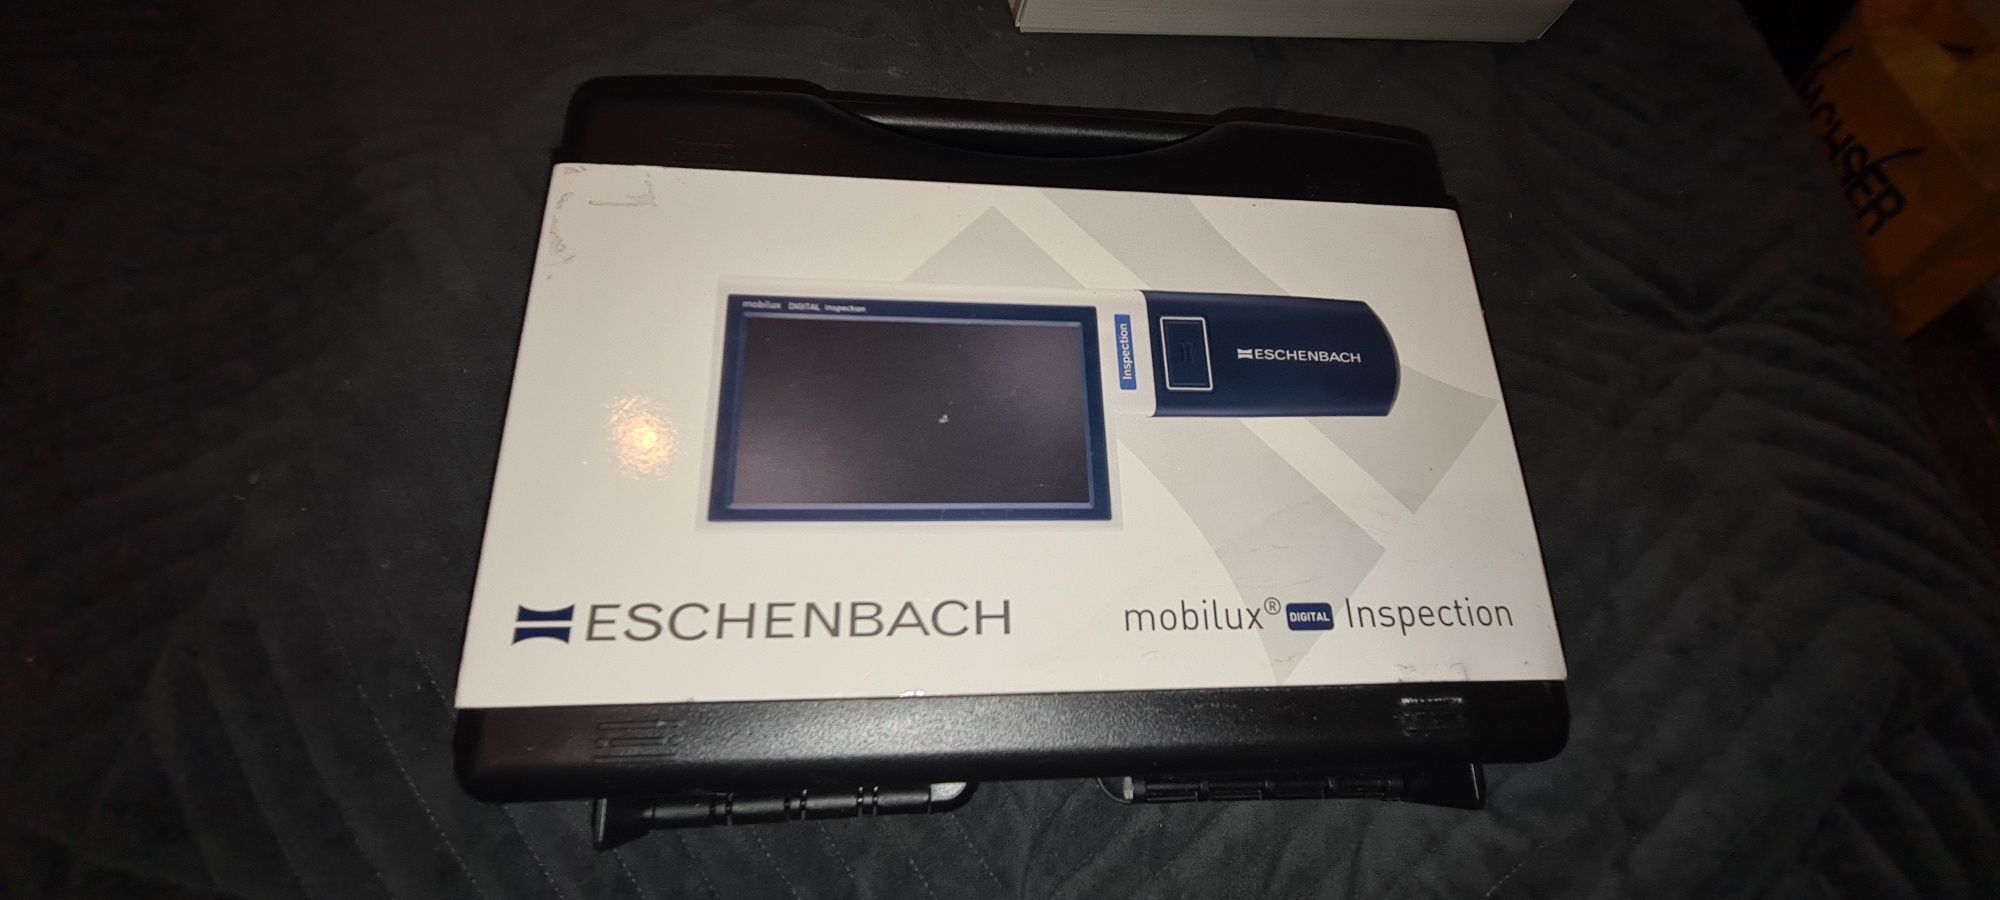 Mobilna lupa led mobilux digital inspection eschenbach